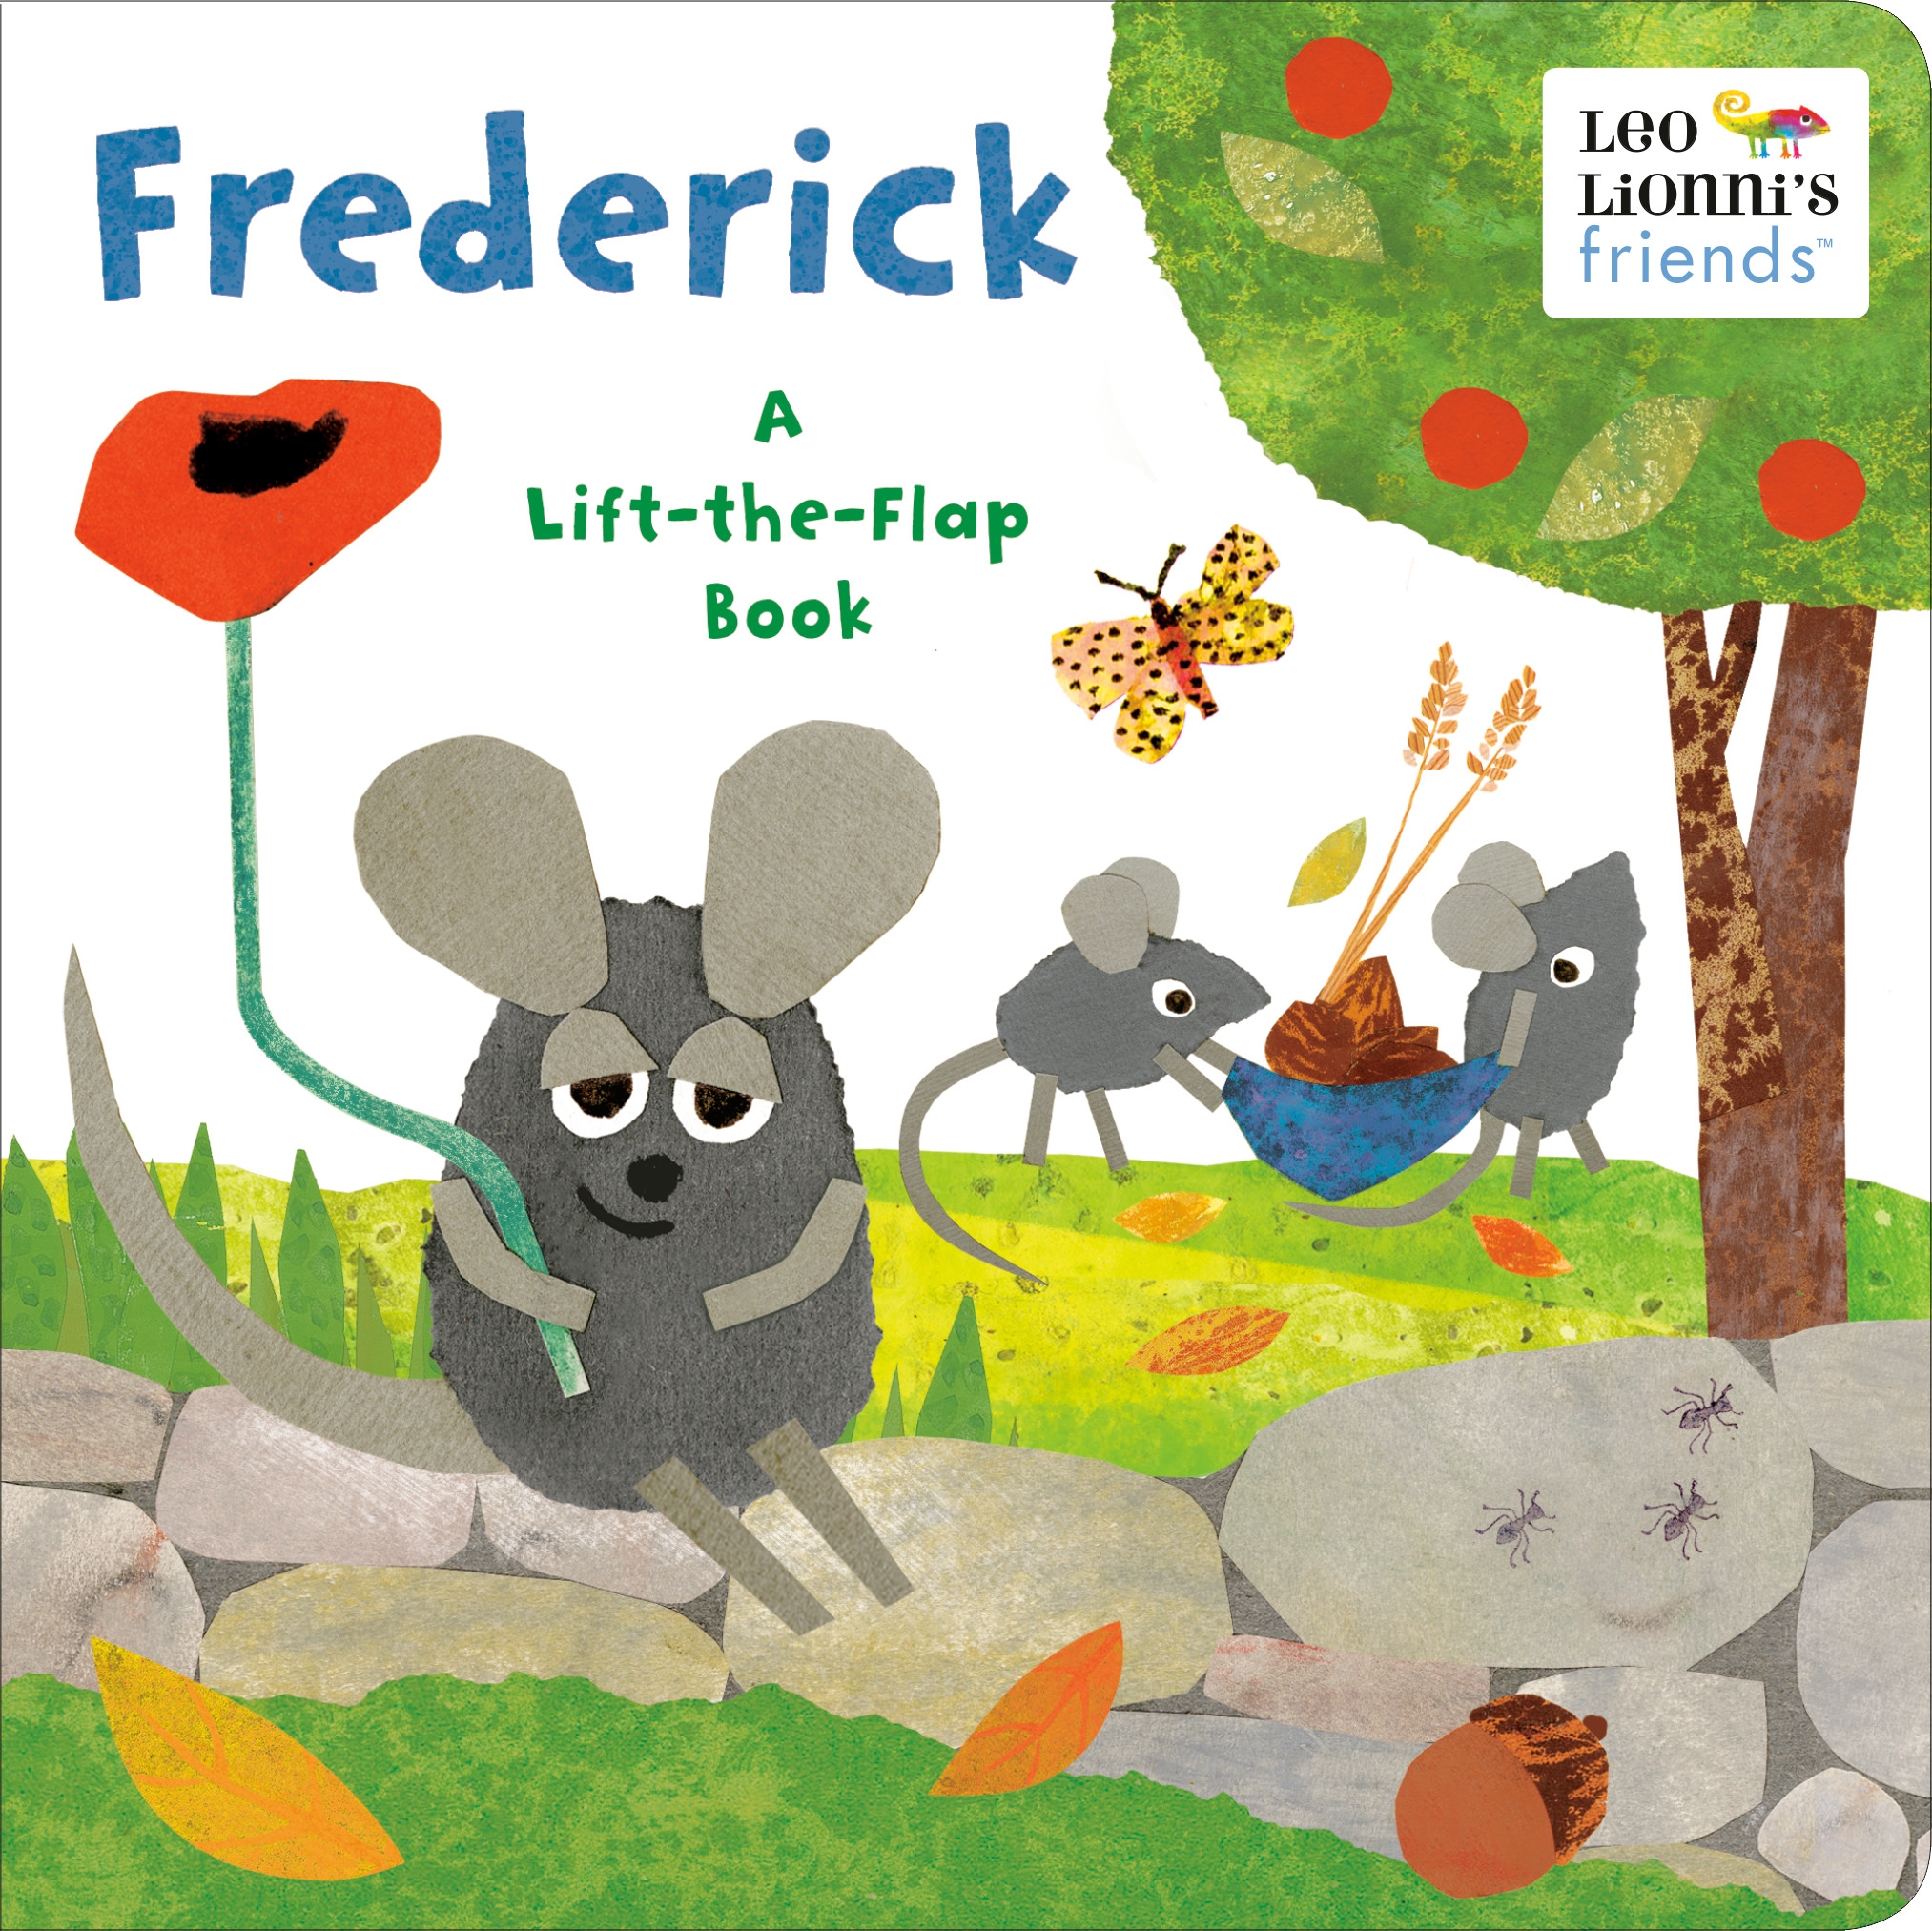 Frederick (Leo Lionni's Friends) by Leo Lionni - Penguin Books New Zealand